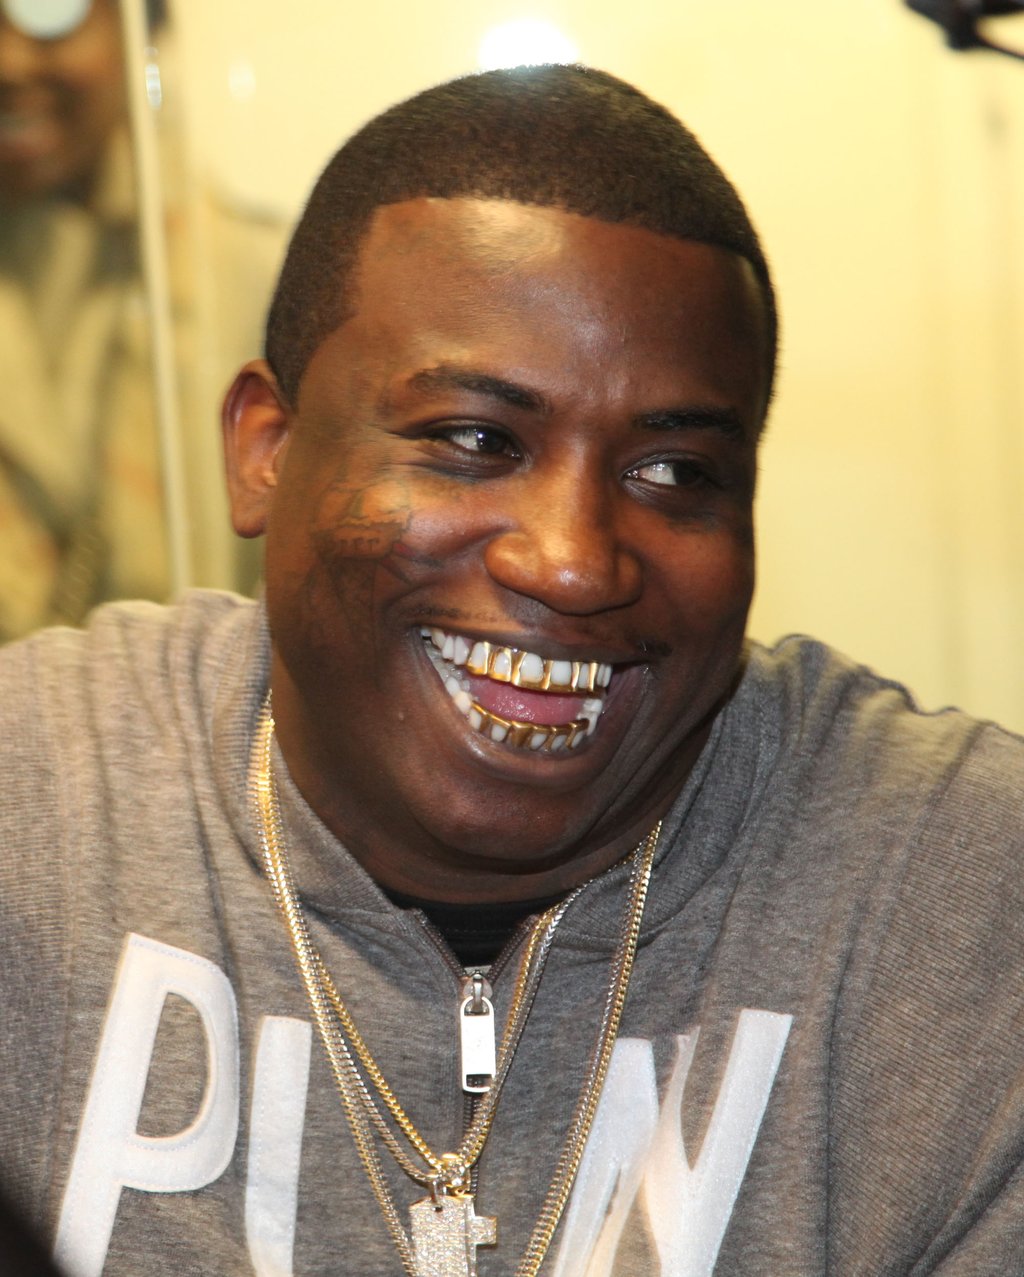 #GucciisFree: Rapper Gucci Mane is Fresh Outta Prison ...